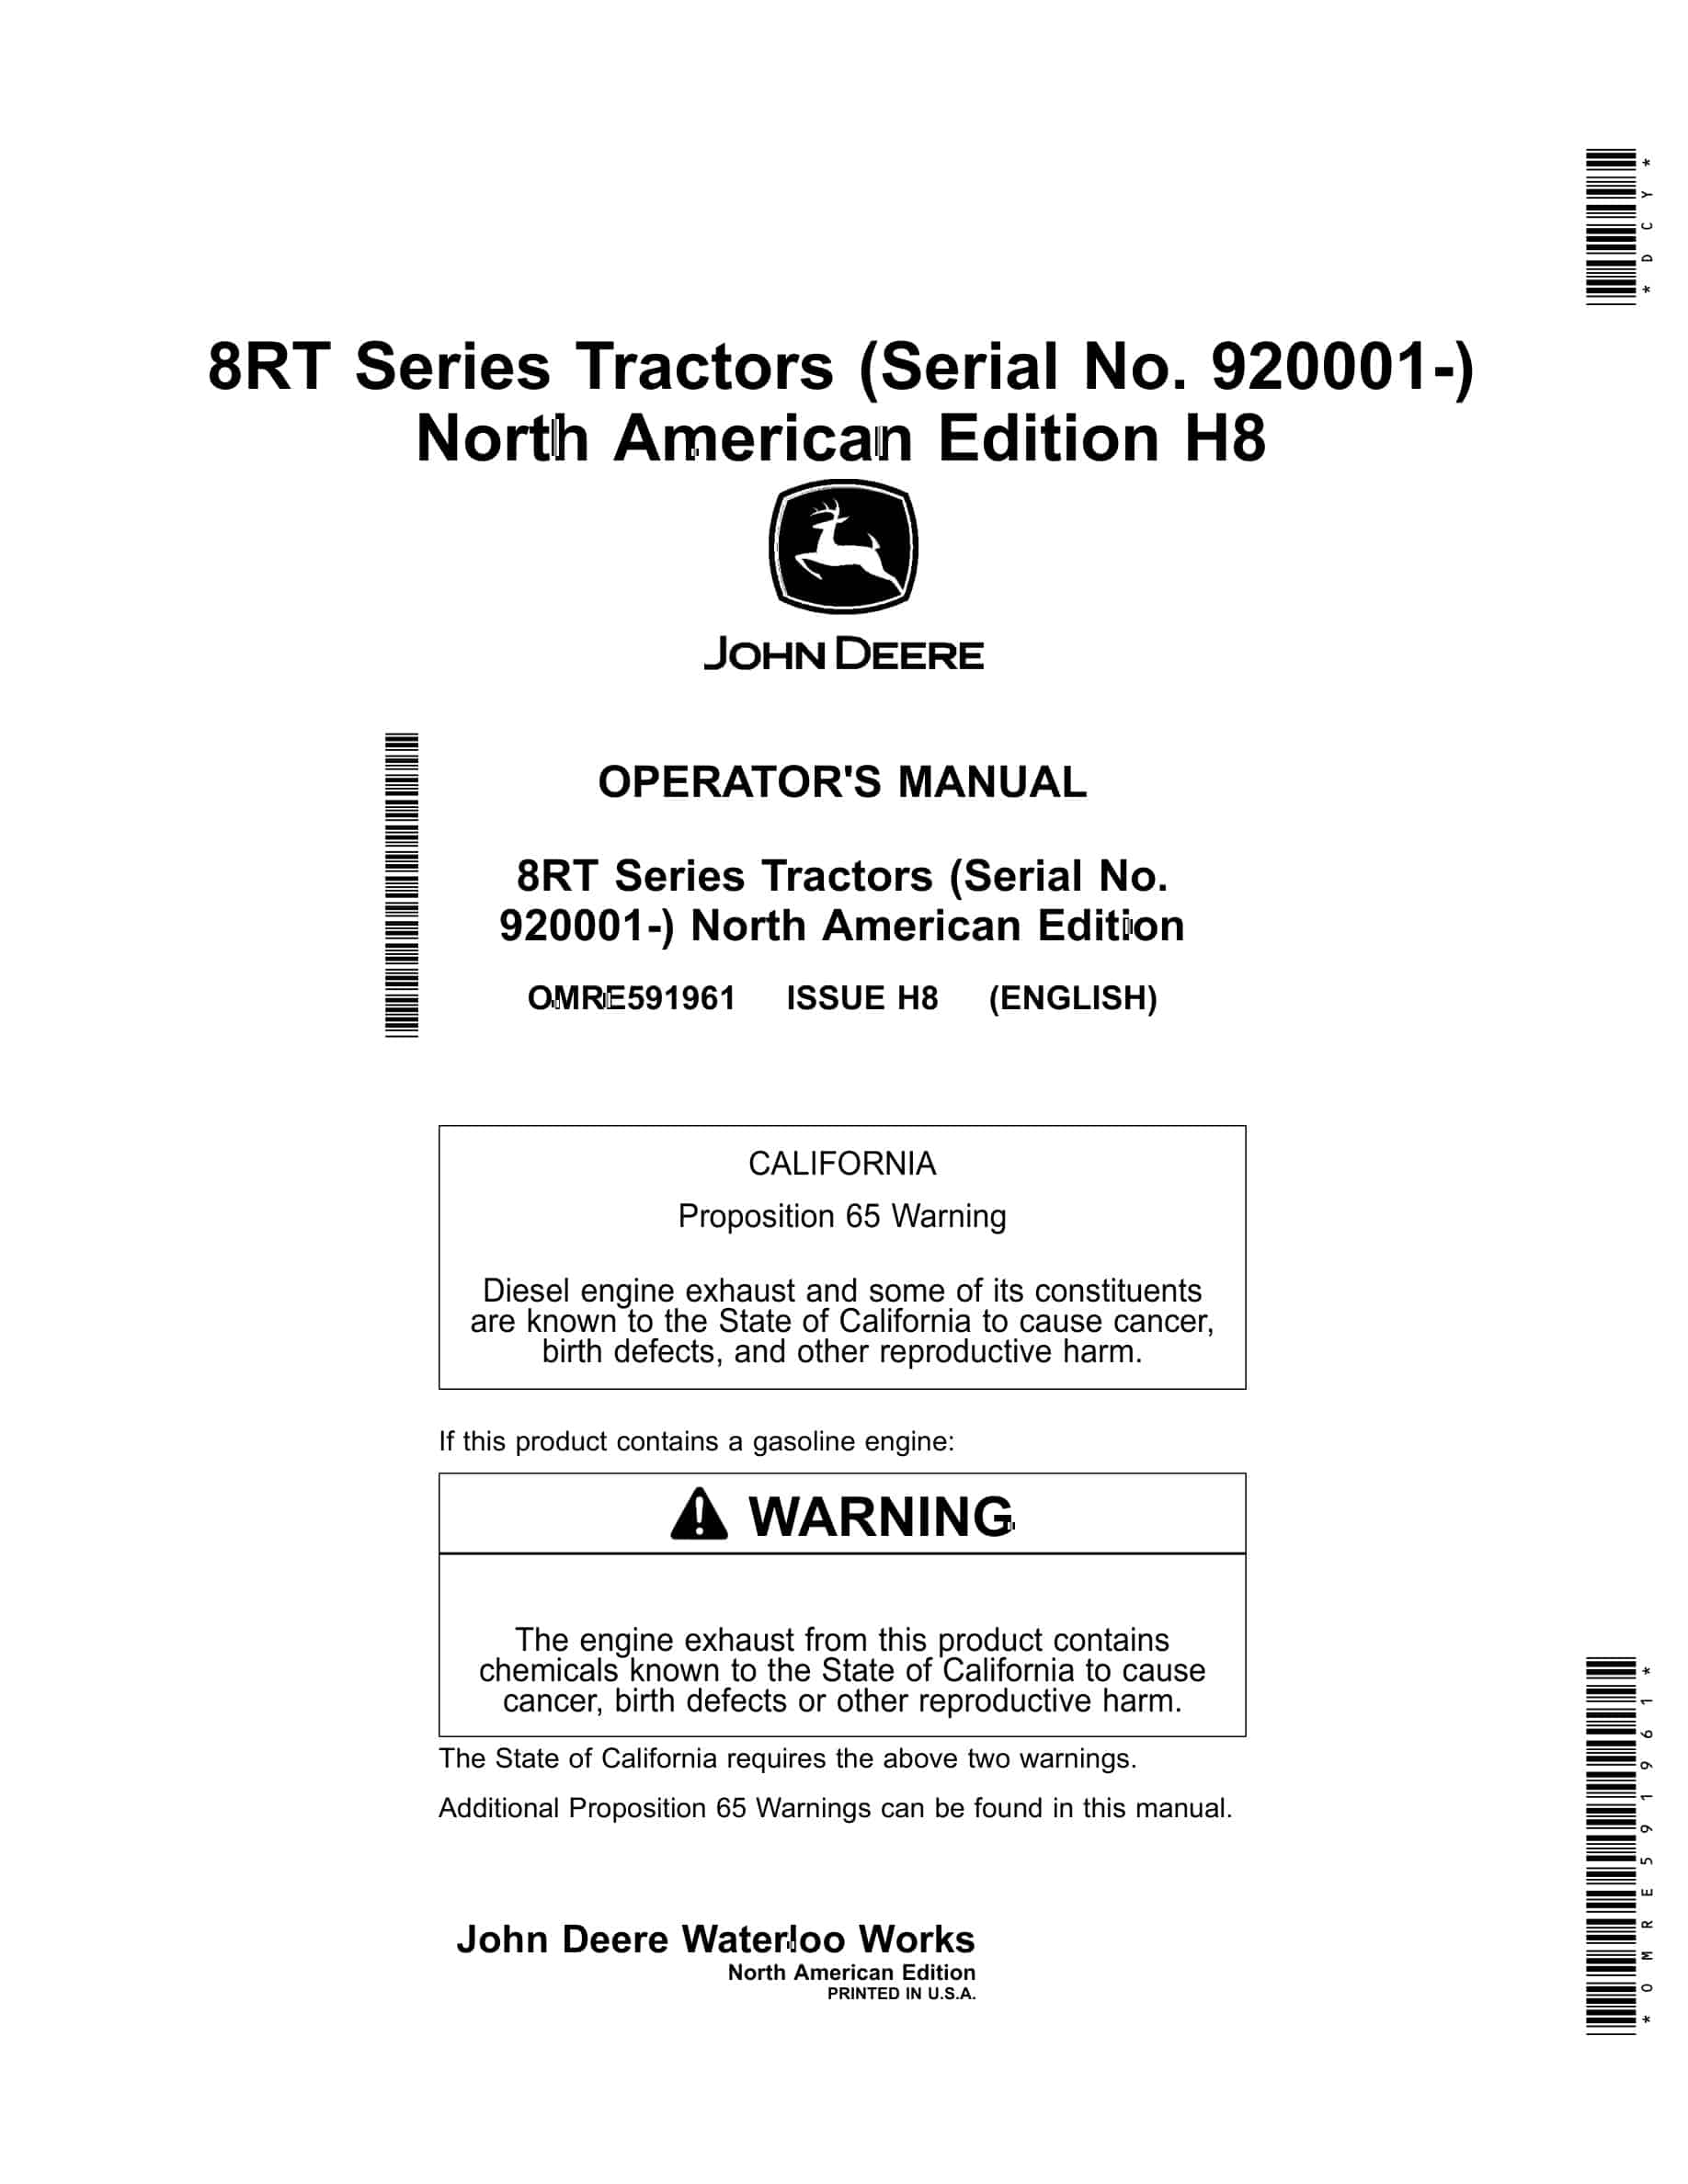 John Deere 8RT Tractor Operator Manual OMRE591961-1